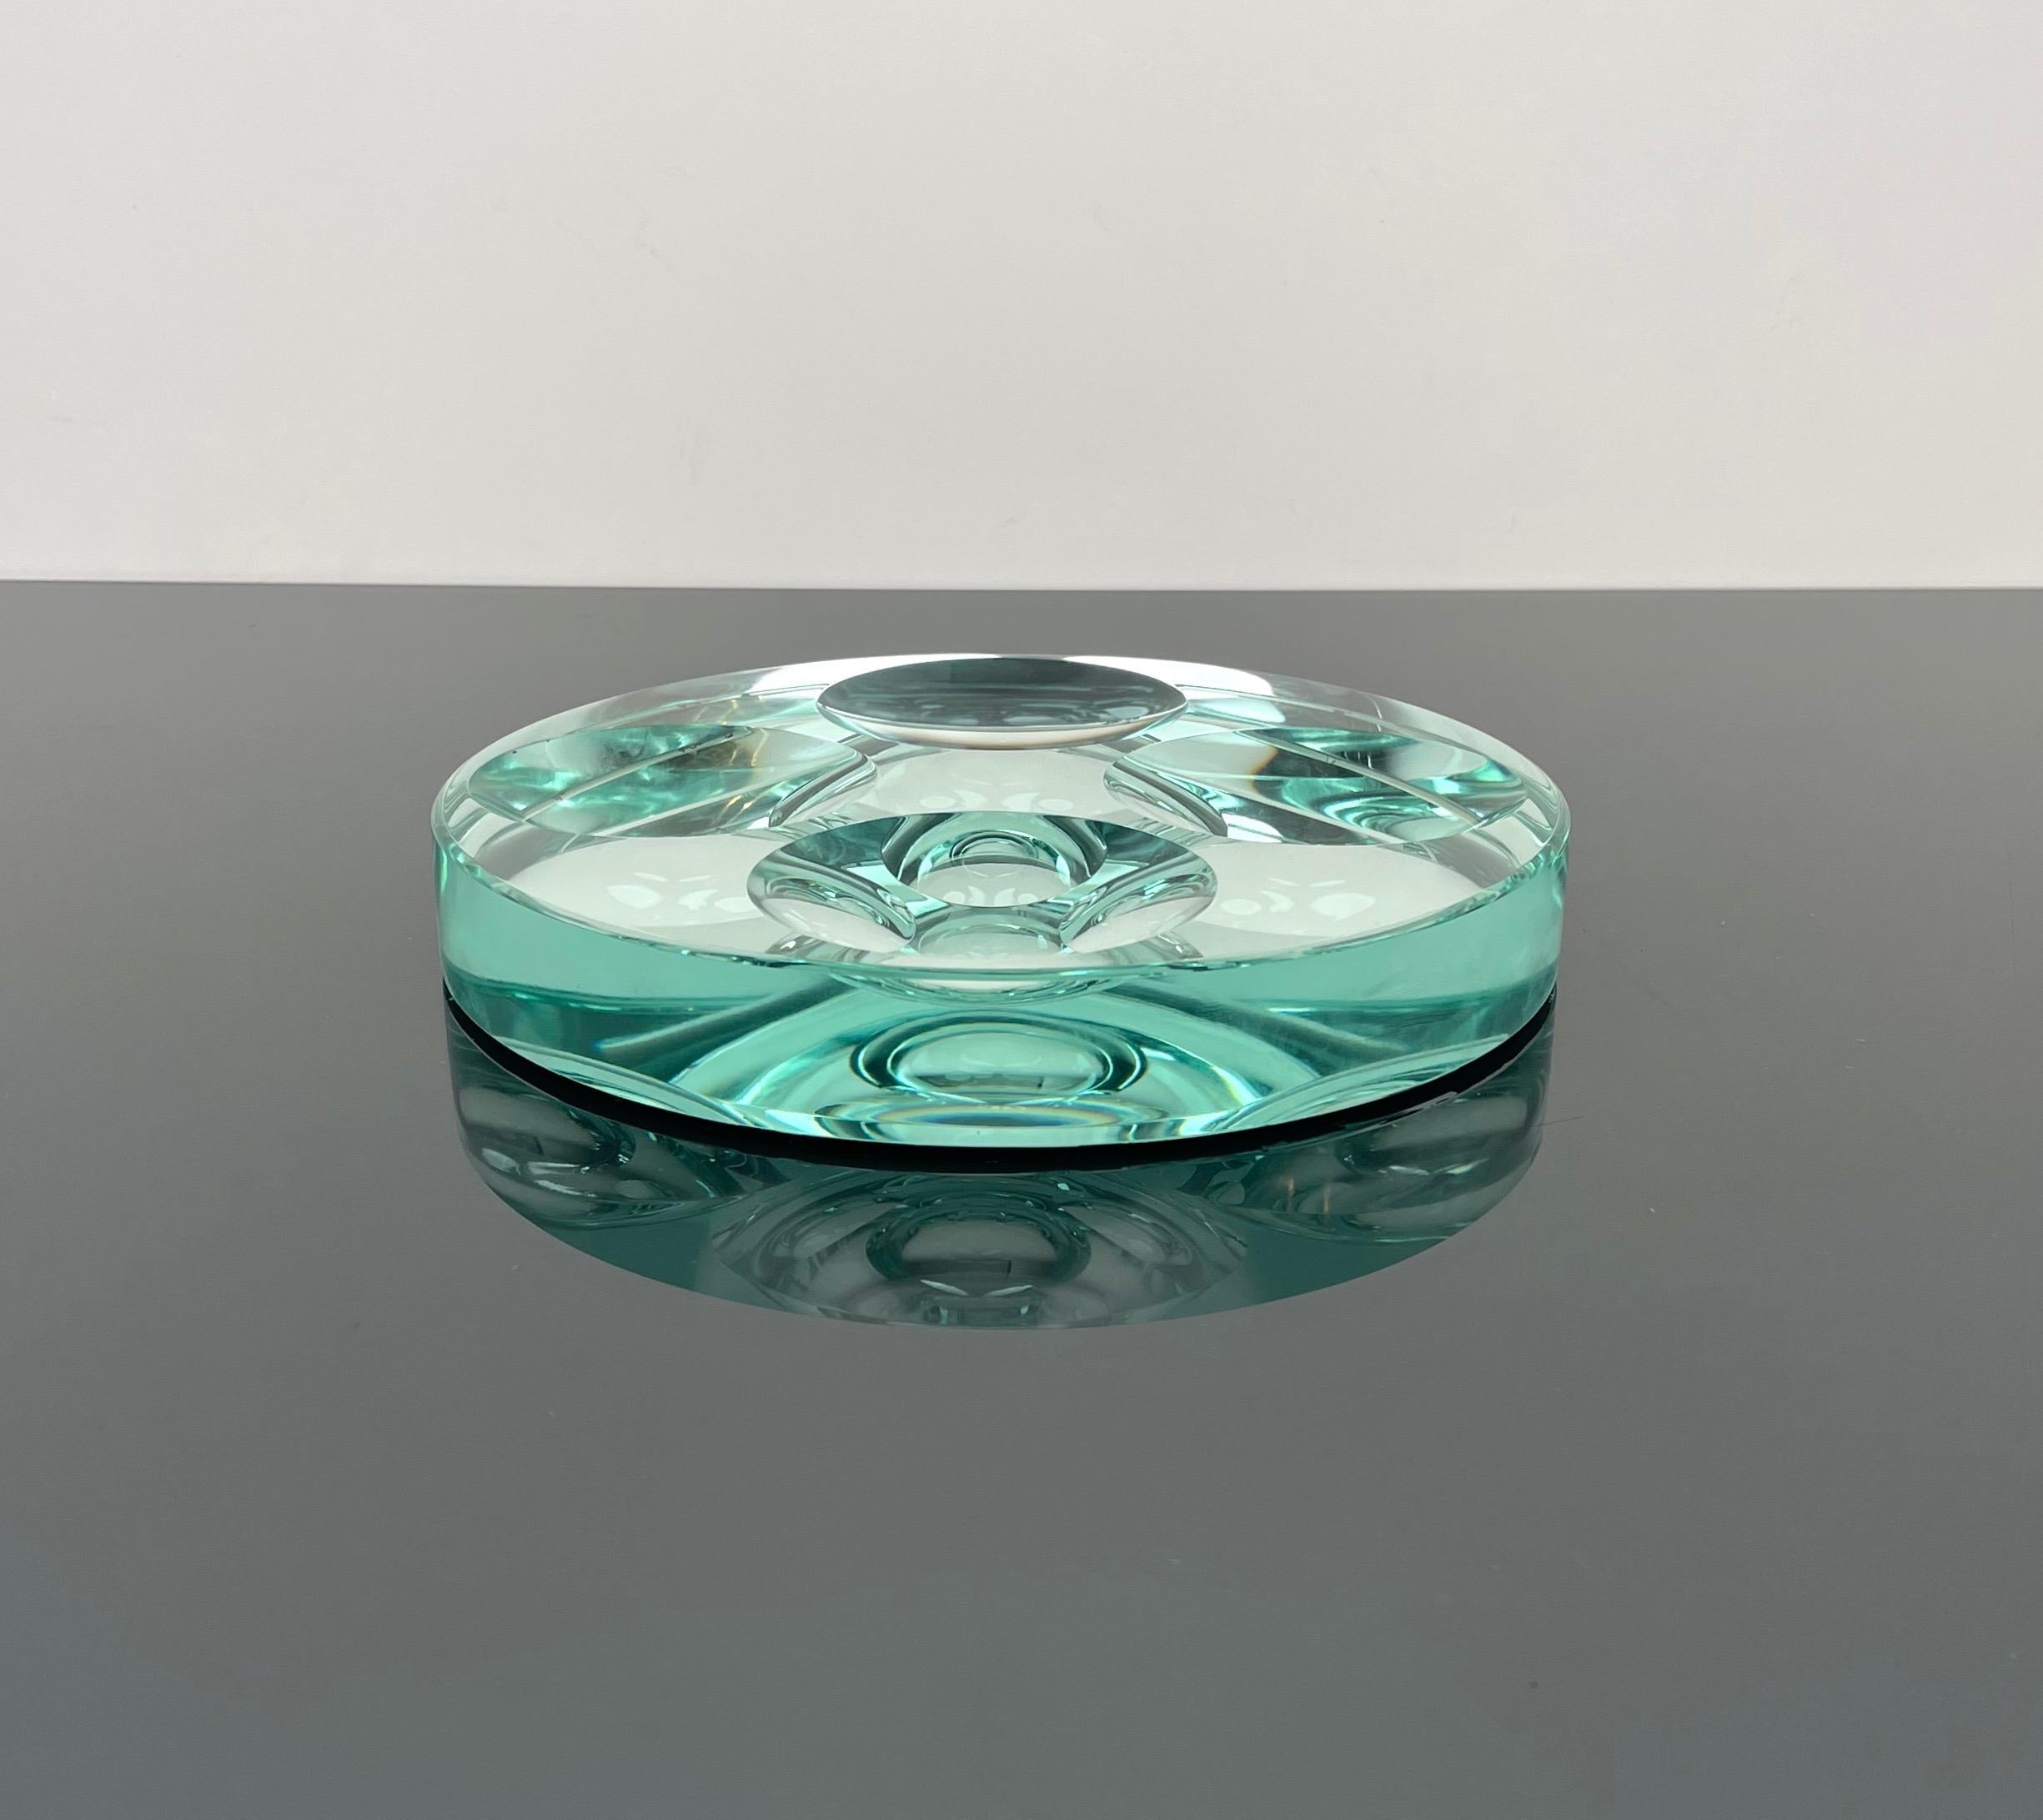 Seltene runde Schale oder Aschenbecher aus grünem Kristallglas und verspiegelter Unterseite mit vier konkaven Kreisen von Fontana Arte.

Hergestellt in Italien in den 1960er Jahren.